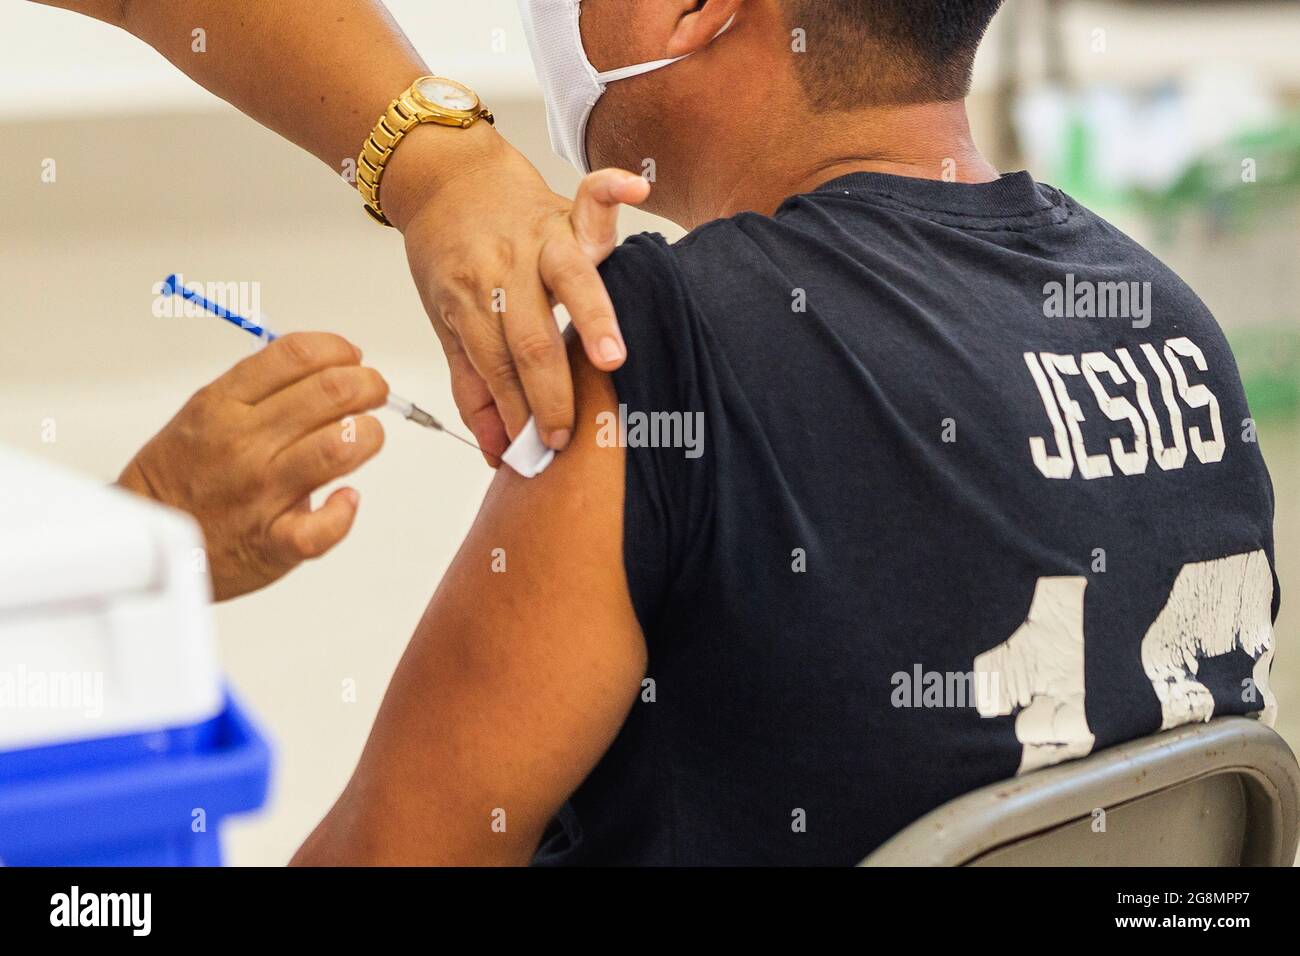 Playa del Carmen, México, 21 de julio de 2021: Una persona recibe una vacuna Covid-19, contra el SARS-CoV-2 que causa la enfermedad de Coronavirus, durante la campaña de vacunación doméstica para personas de 30-39 años de edad. Crédito: Natalia Pescador / Grupo Eyepix / Alamy Live News Foto de stock